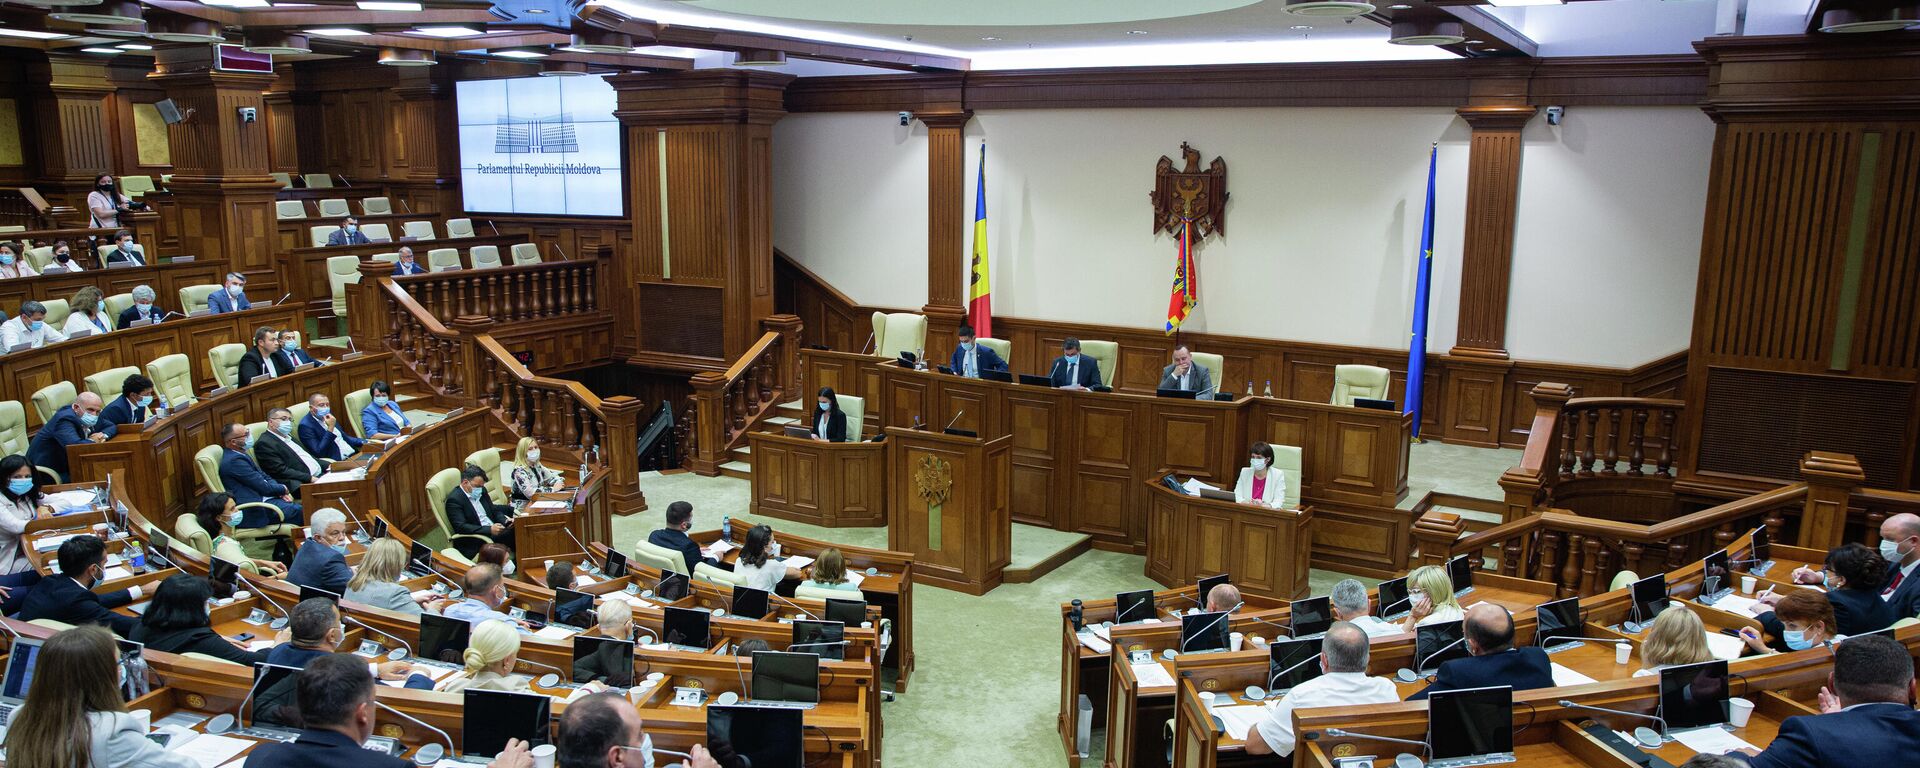 Deputați în Parlamentul Republicii Moldova  - Sputnik Moldova, 1920, 06.08.2021